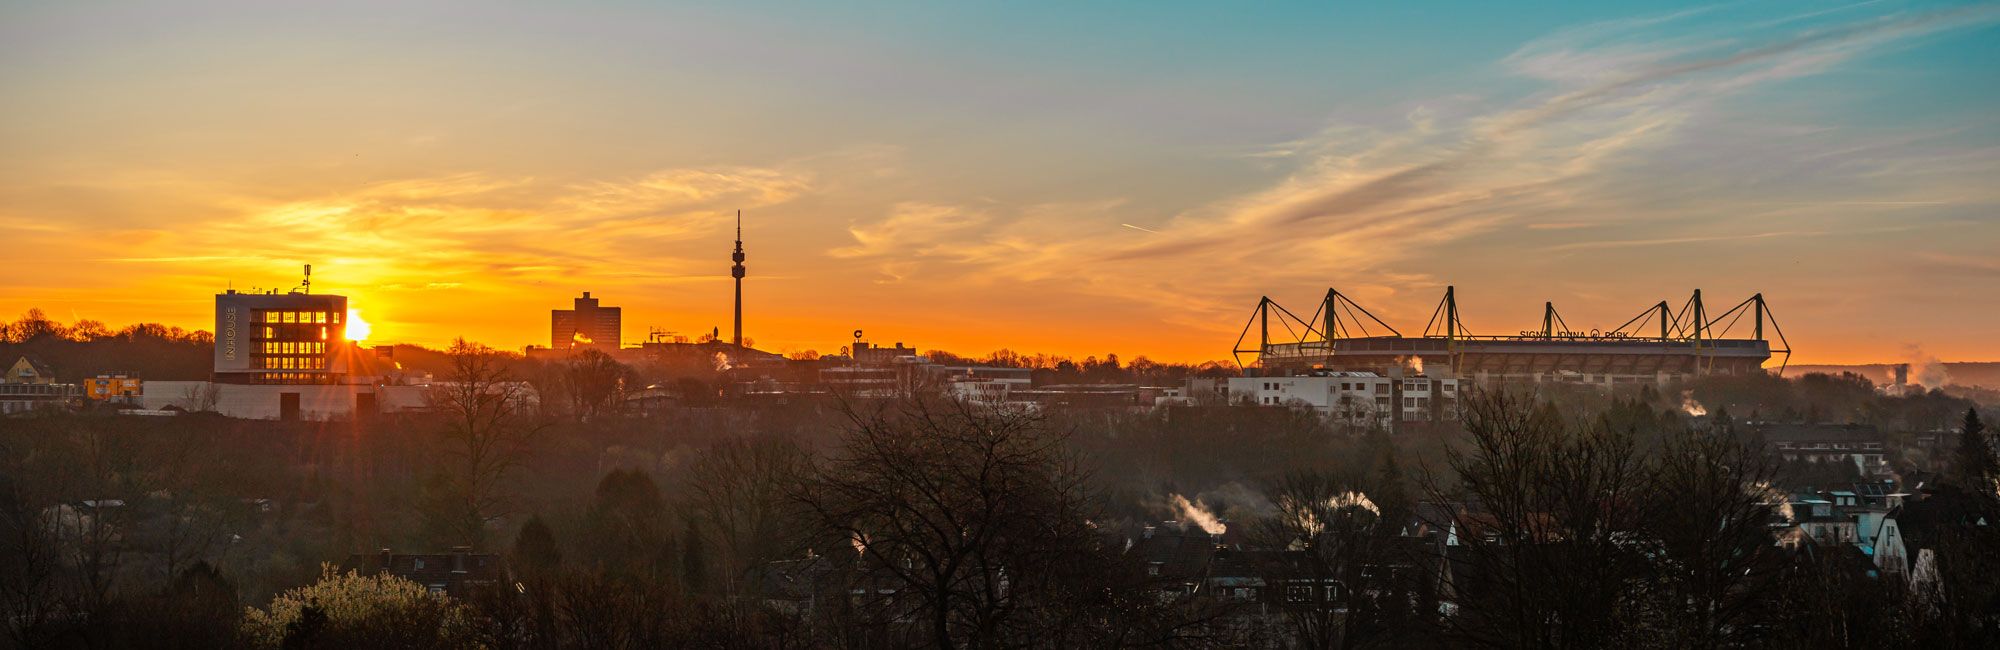 Dr. Claus + Wefers + Kollegen in Dortmund, Panorama Skyline Dortmund beim Sonnenuntergang